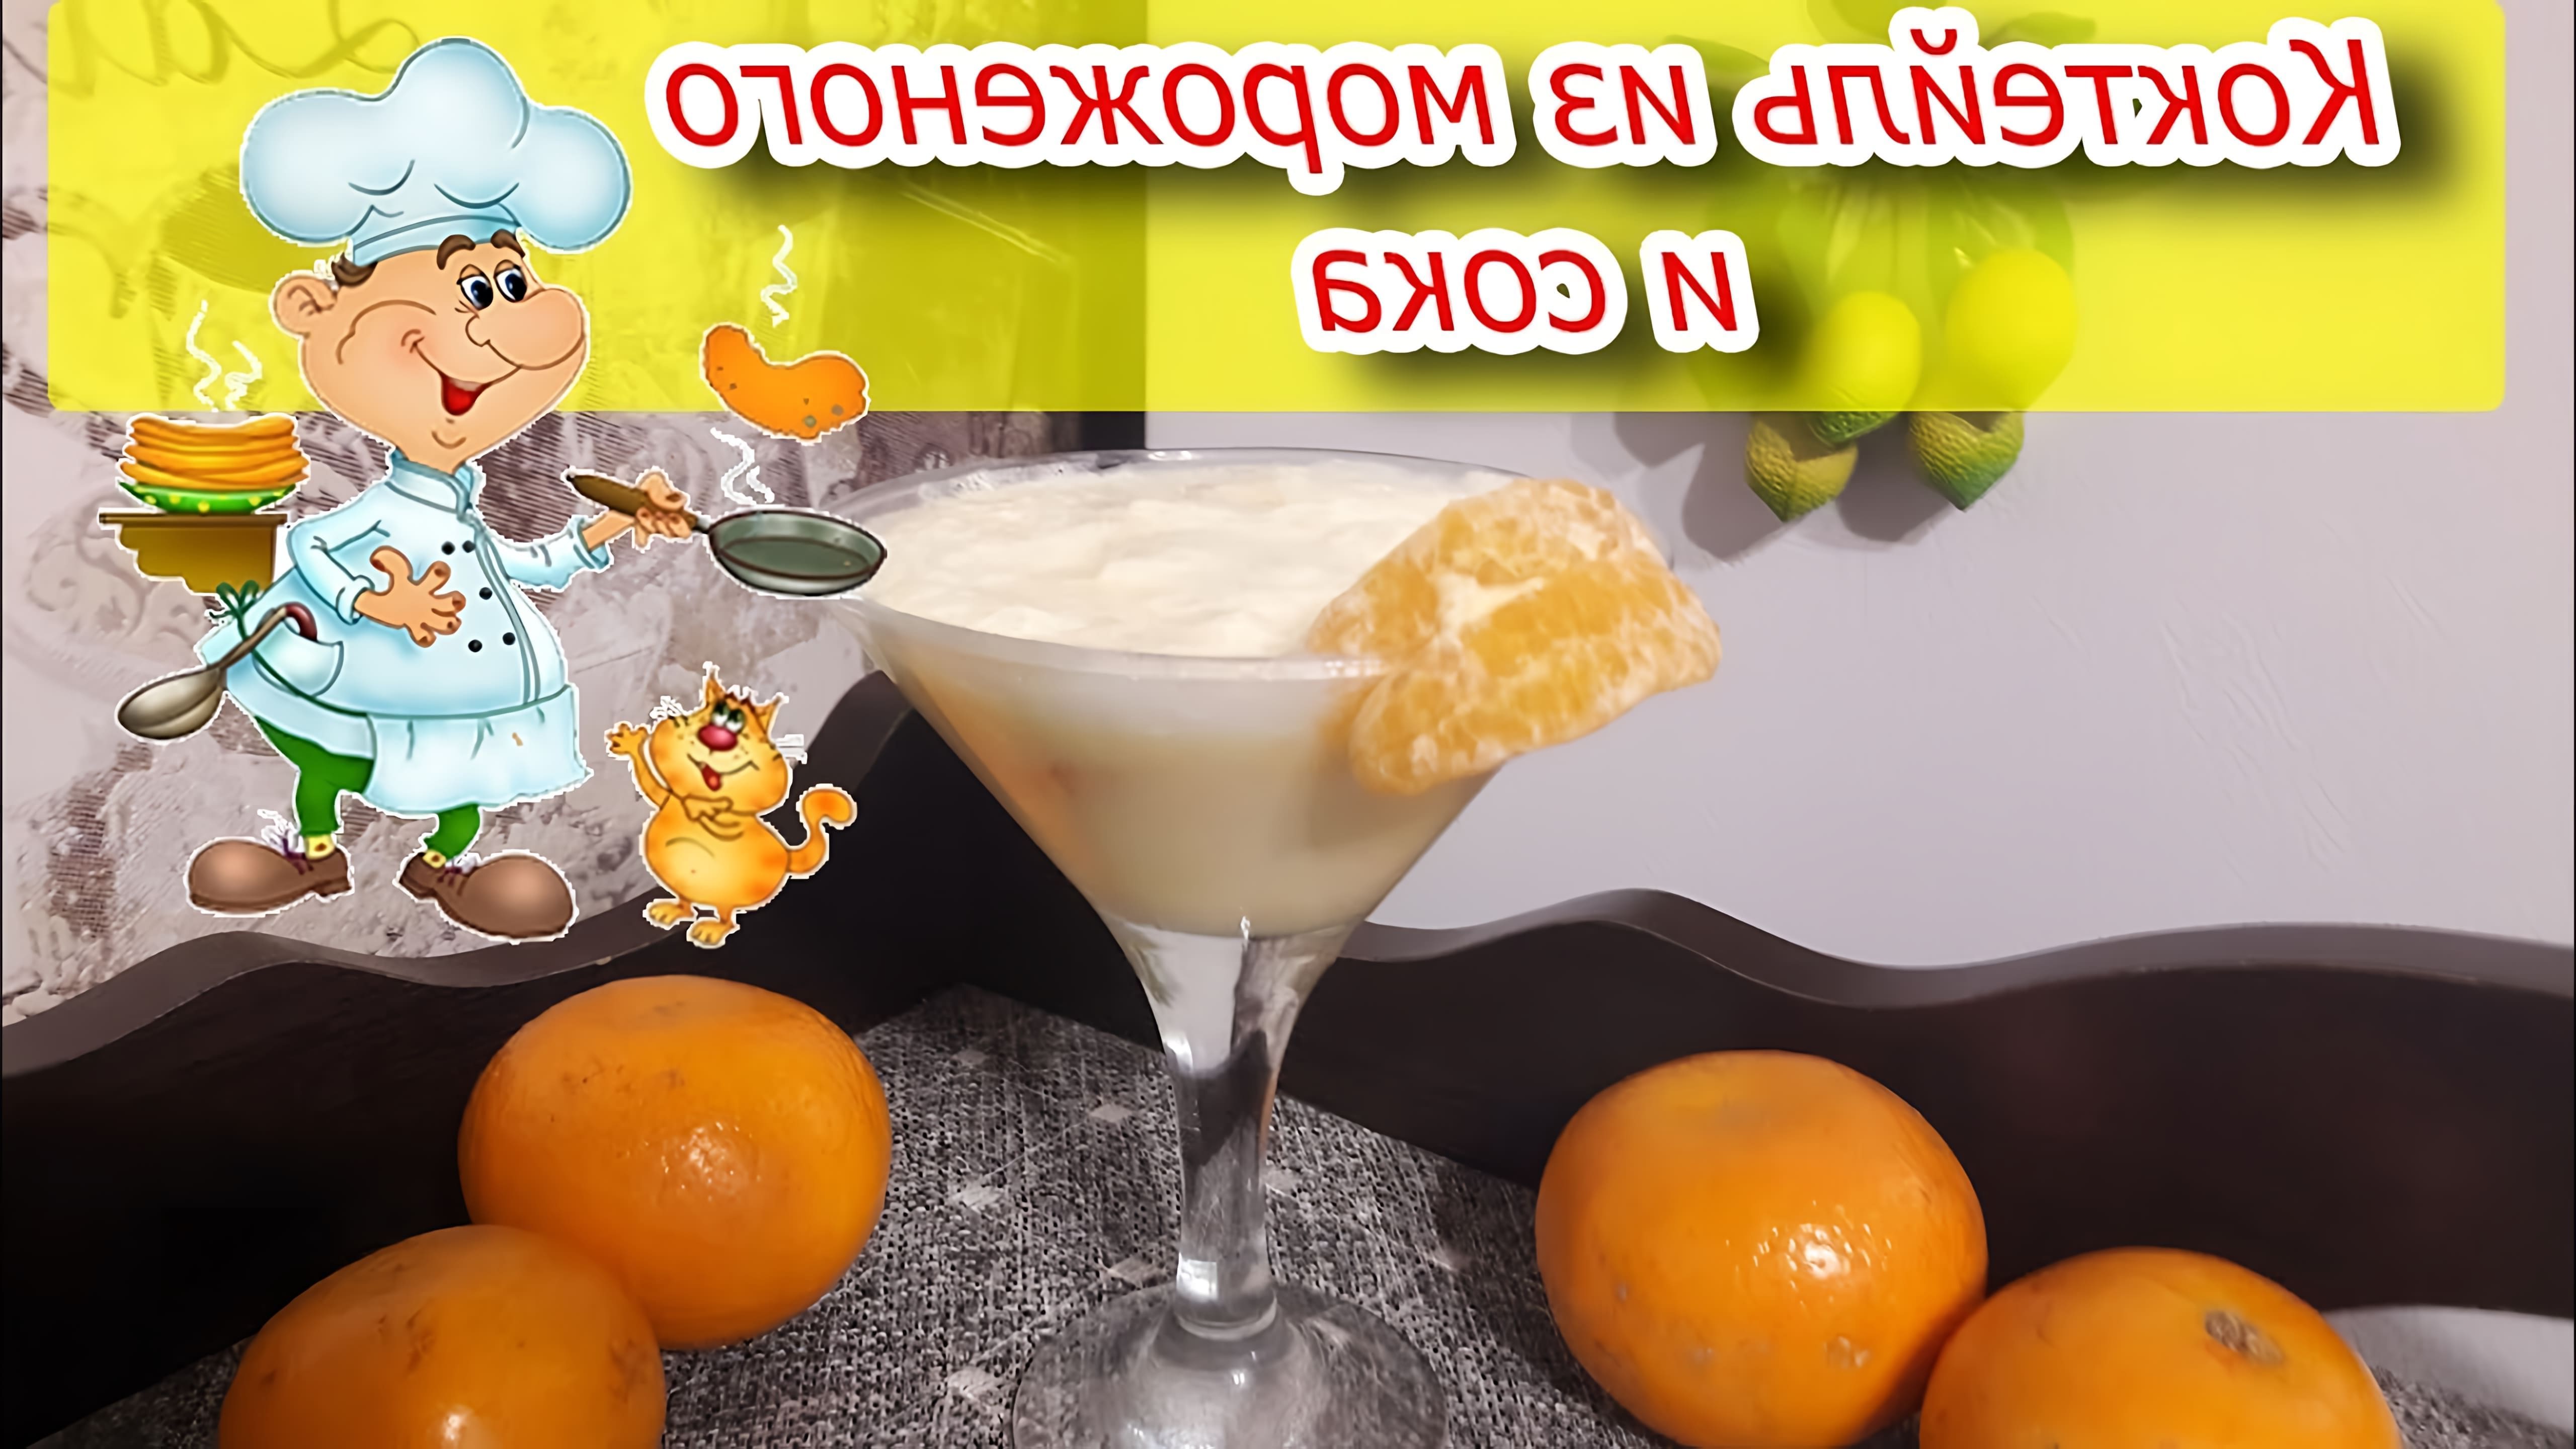 В этом видео демонстрируется процесс приготовления вкусного коктейля из мороженого и апельсинового сока